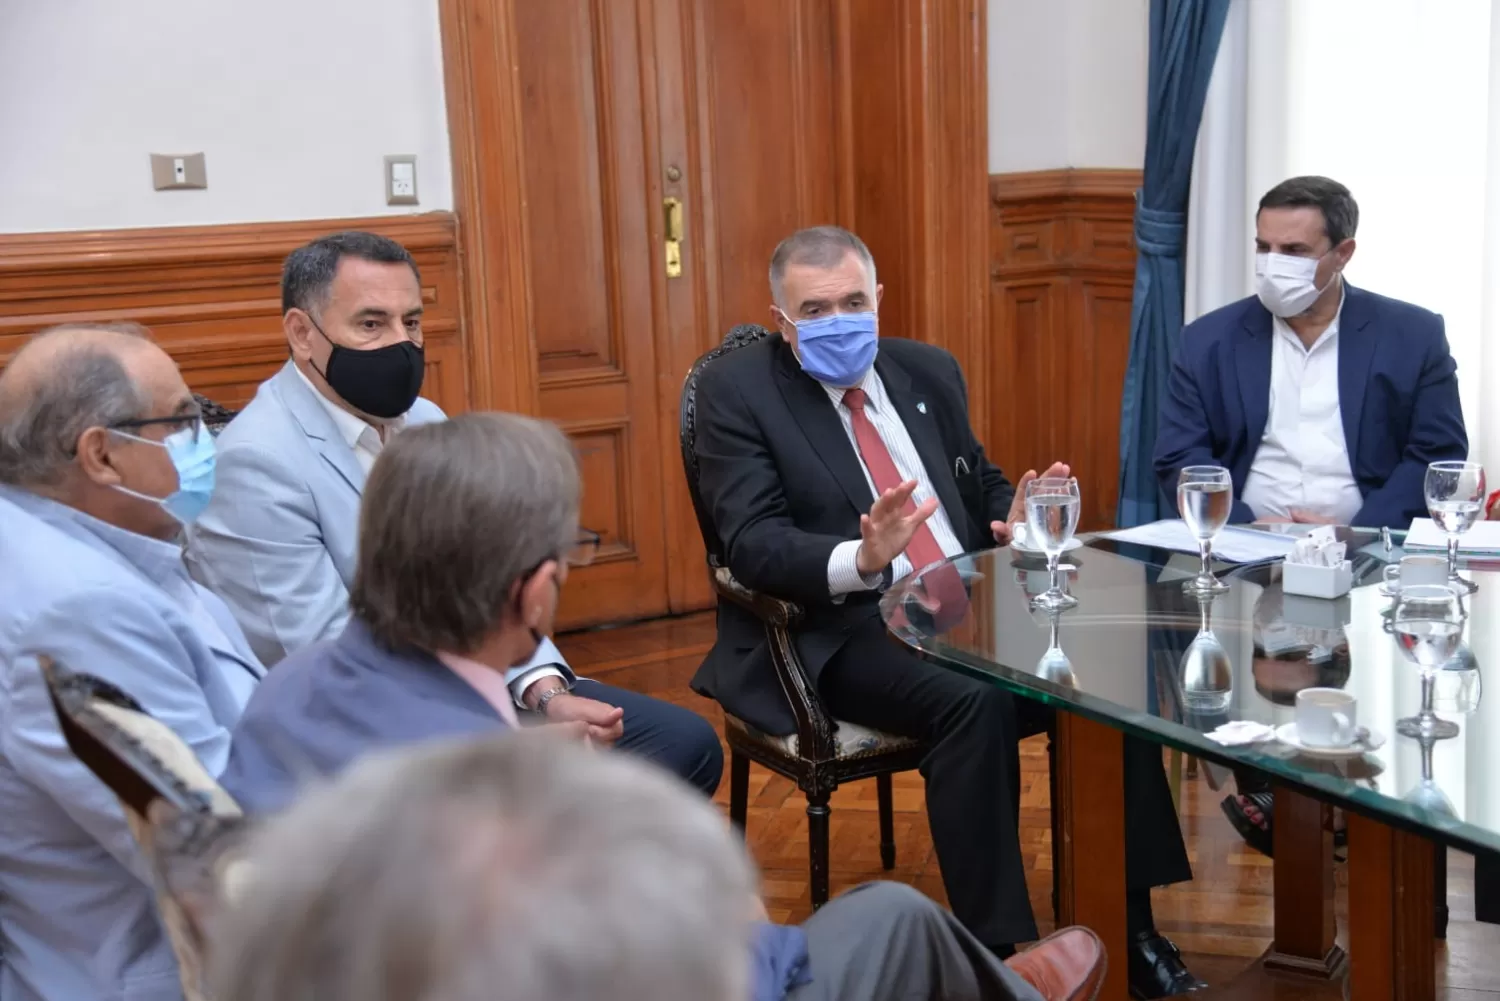 EN REUNIÓN. Jaldo encabeza el encuentro con funcionarios, en la Casa de Gobierno. foto: Prensa Gobernación